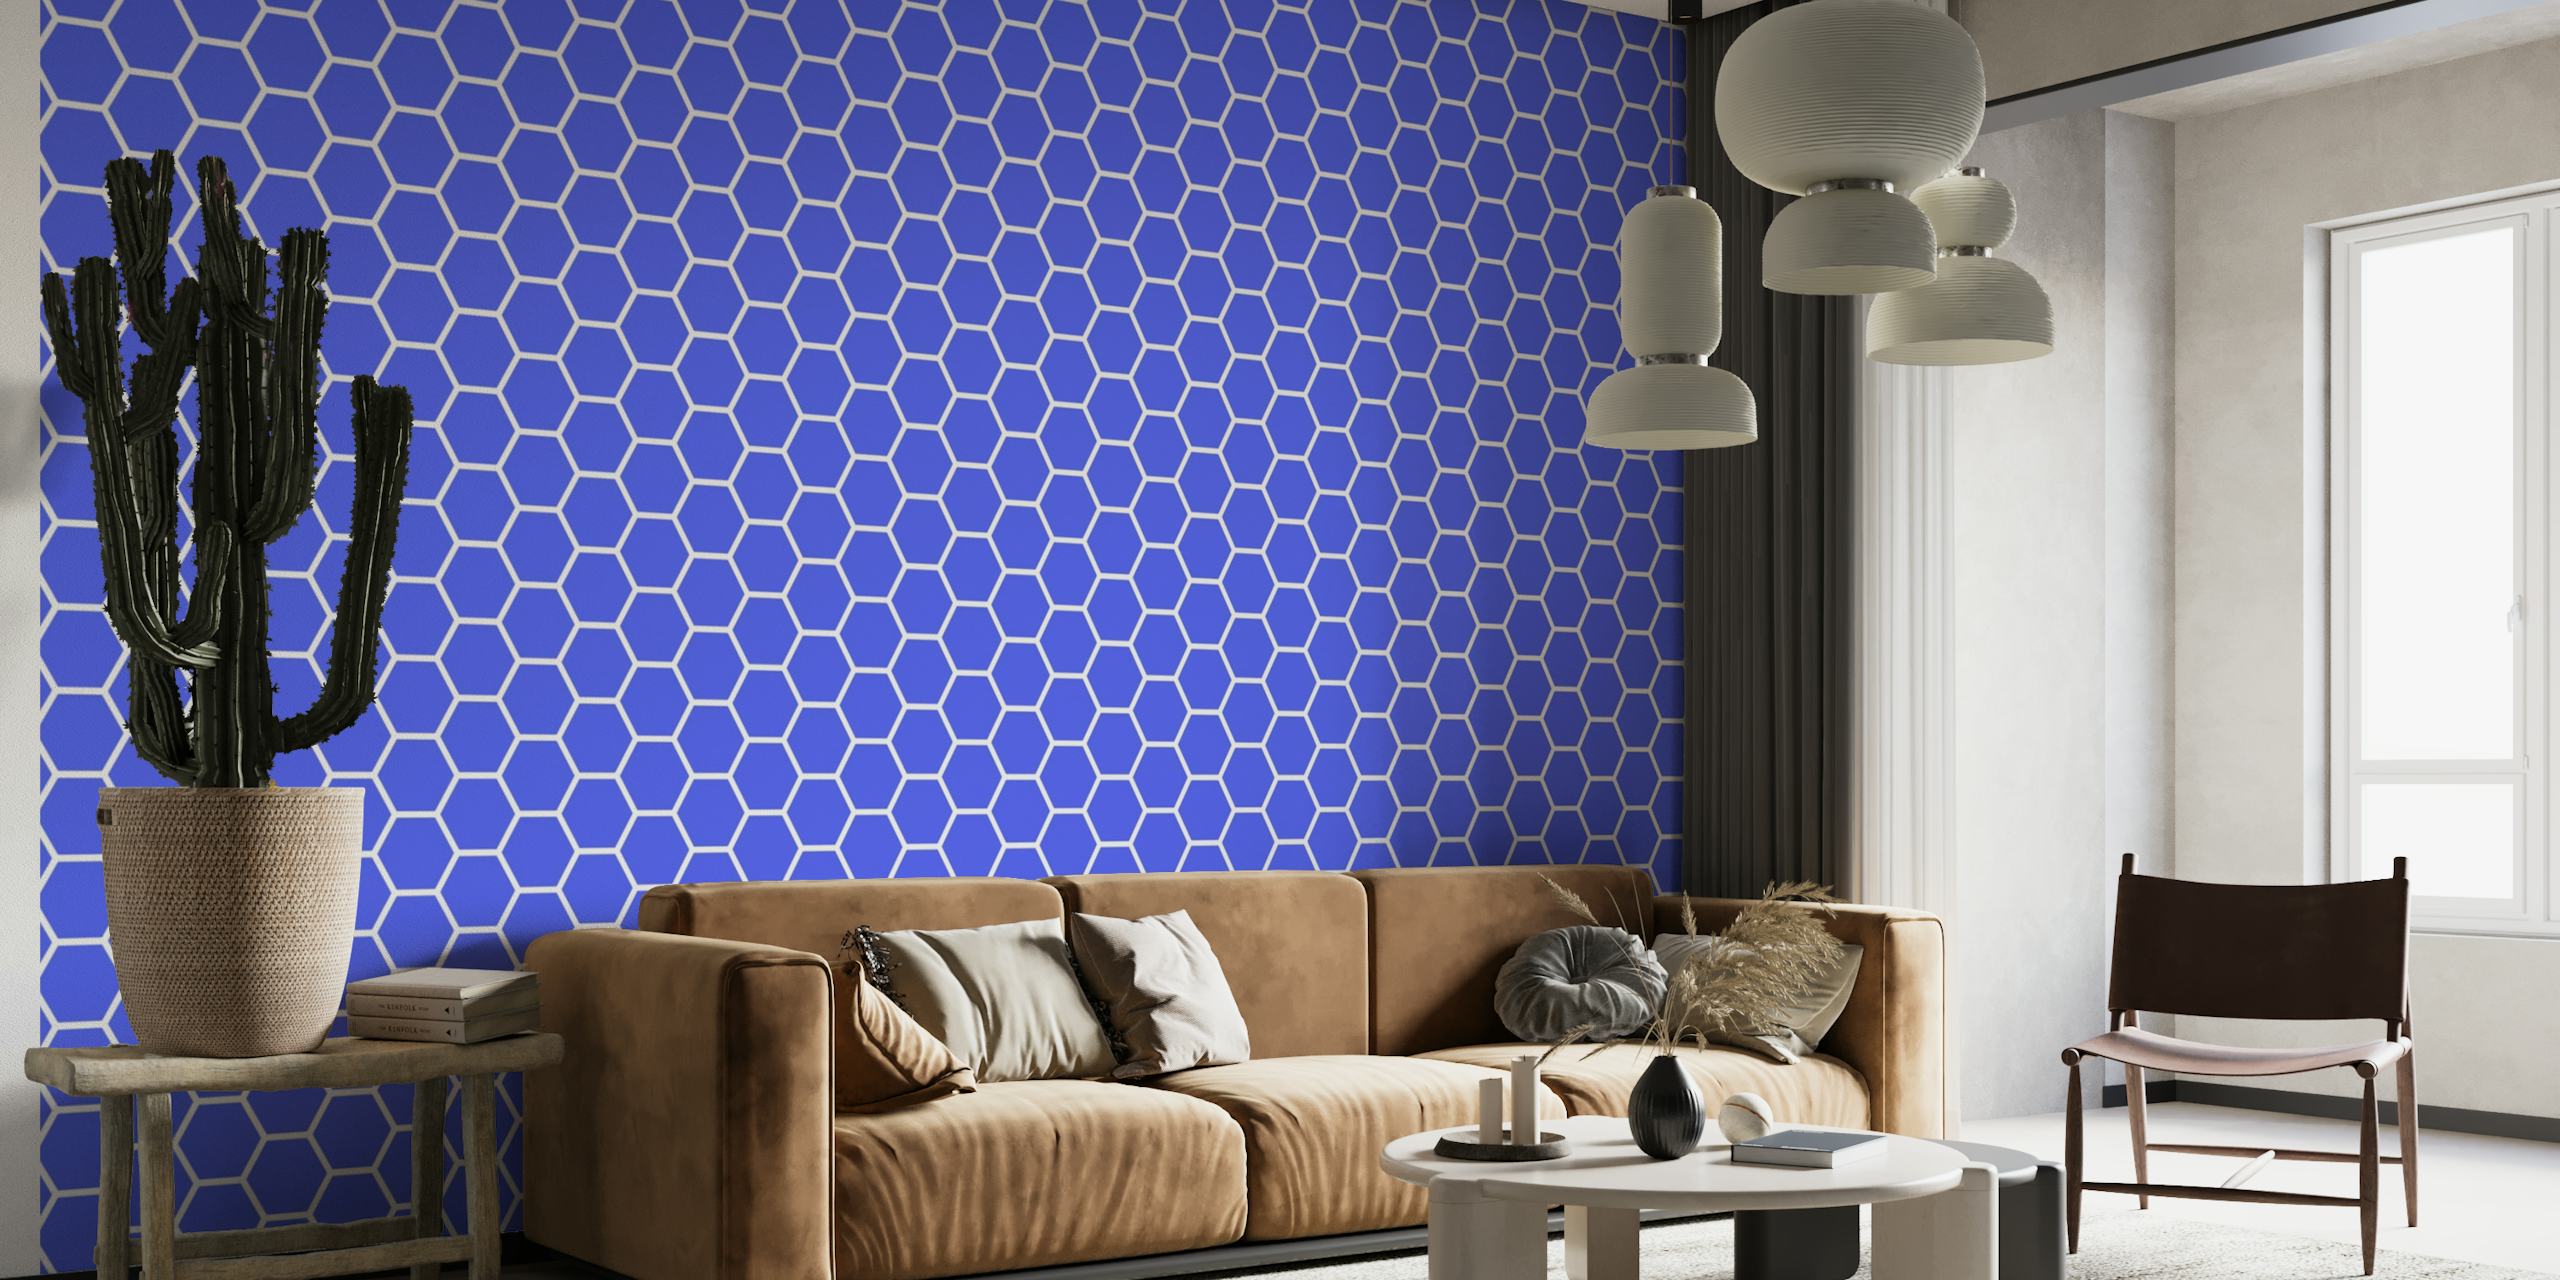 Klarblå hexagonalt mönster tapet för modern inredning.